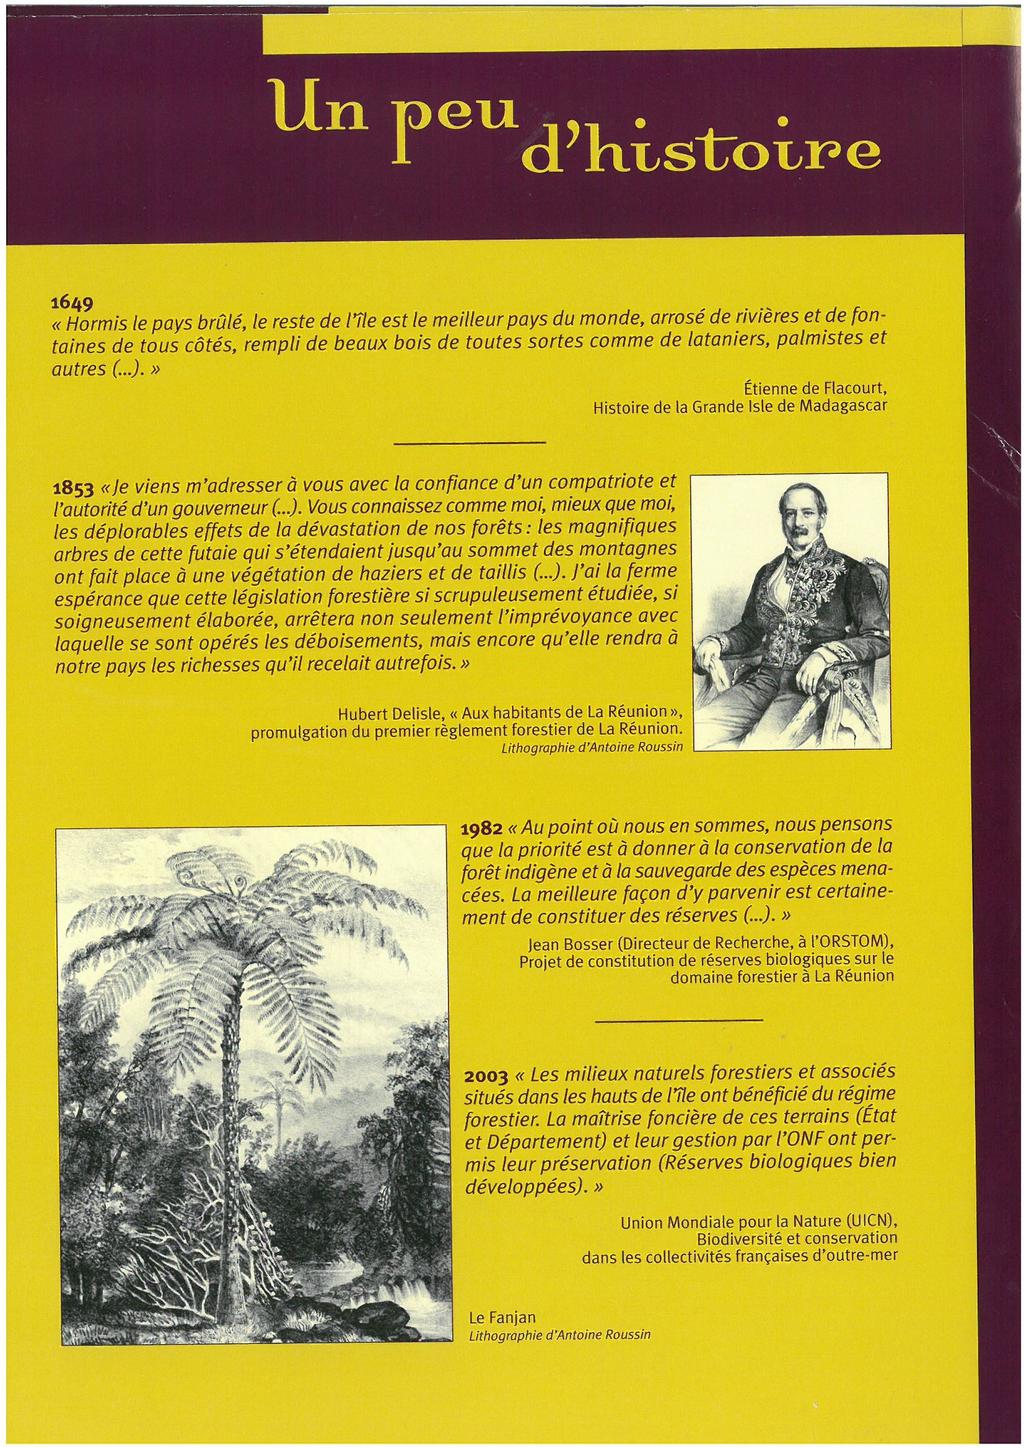 A La Réunion, création du domaine forestier vers 1870 suite aux effets de la déforestation massive (coulées de boues, glissements de terrain ) Hubert Delisle «Aux habitants de la Réunion», 1853 : «Je